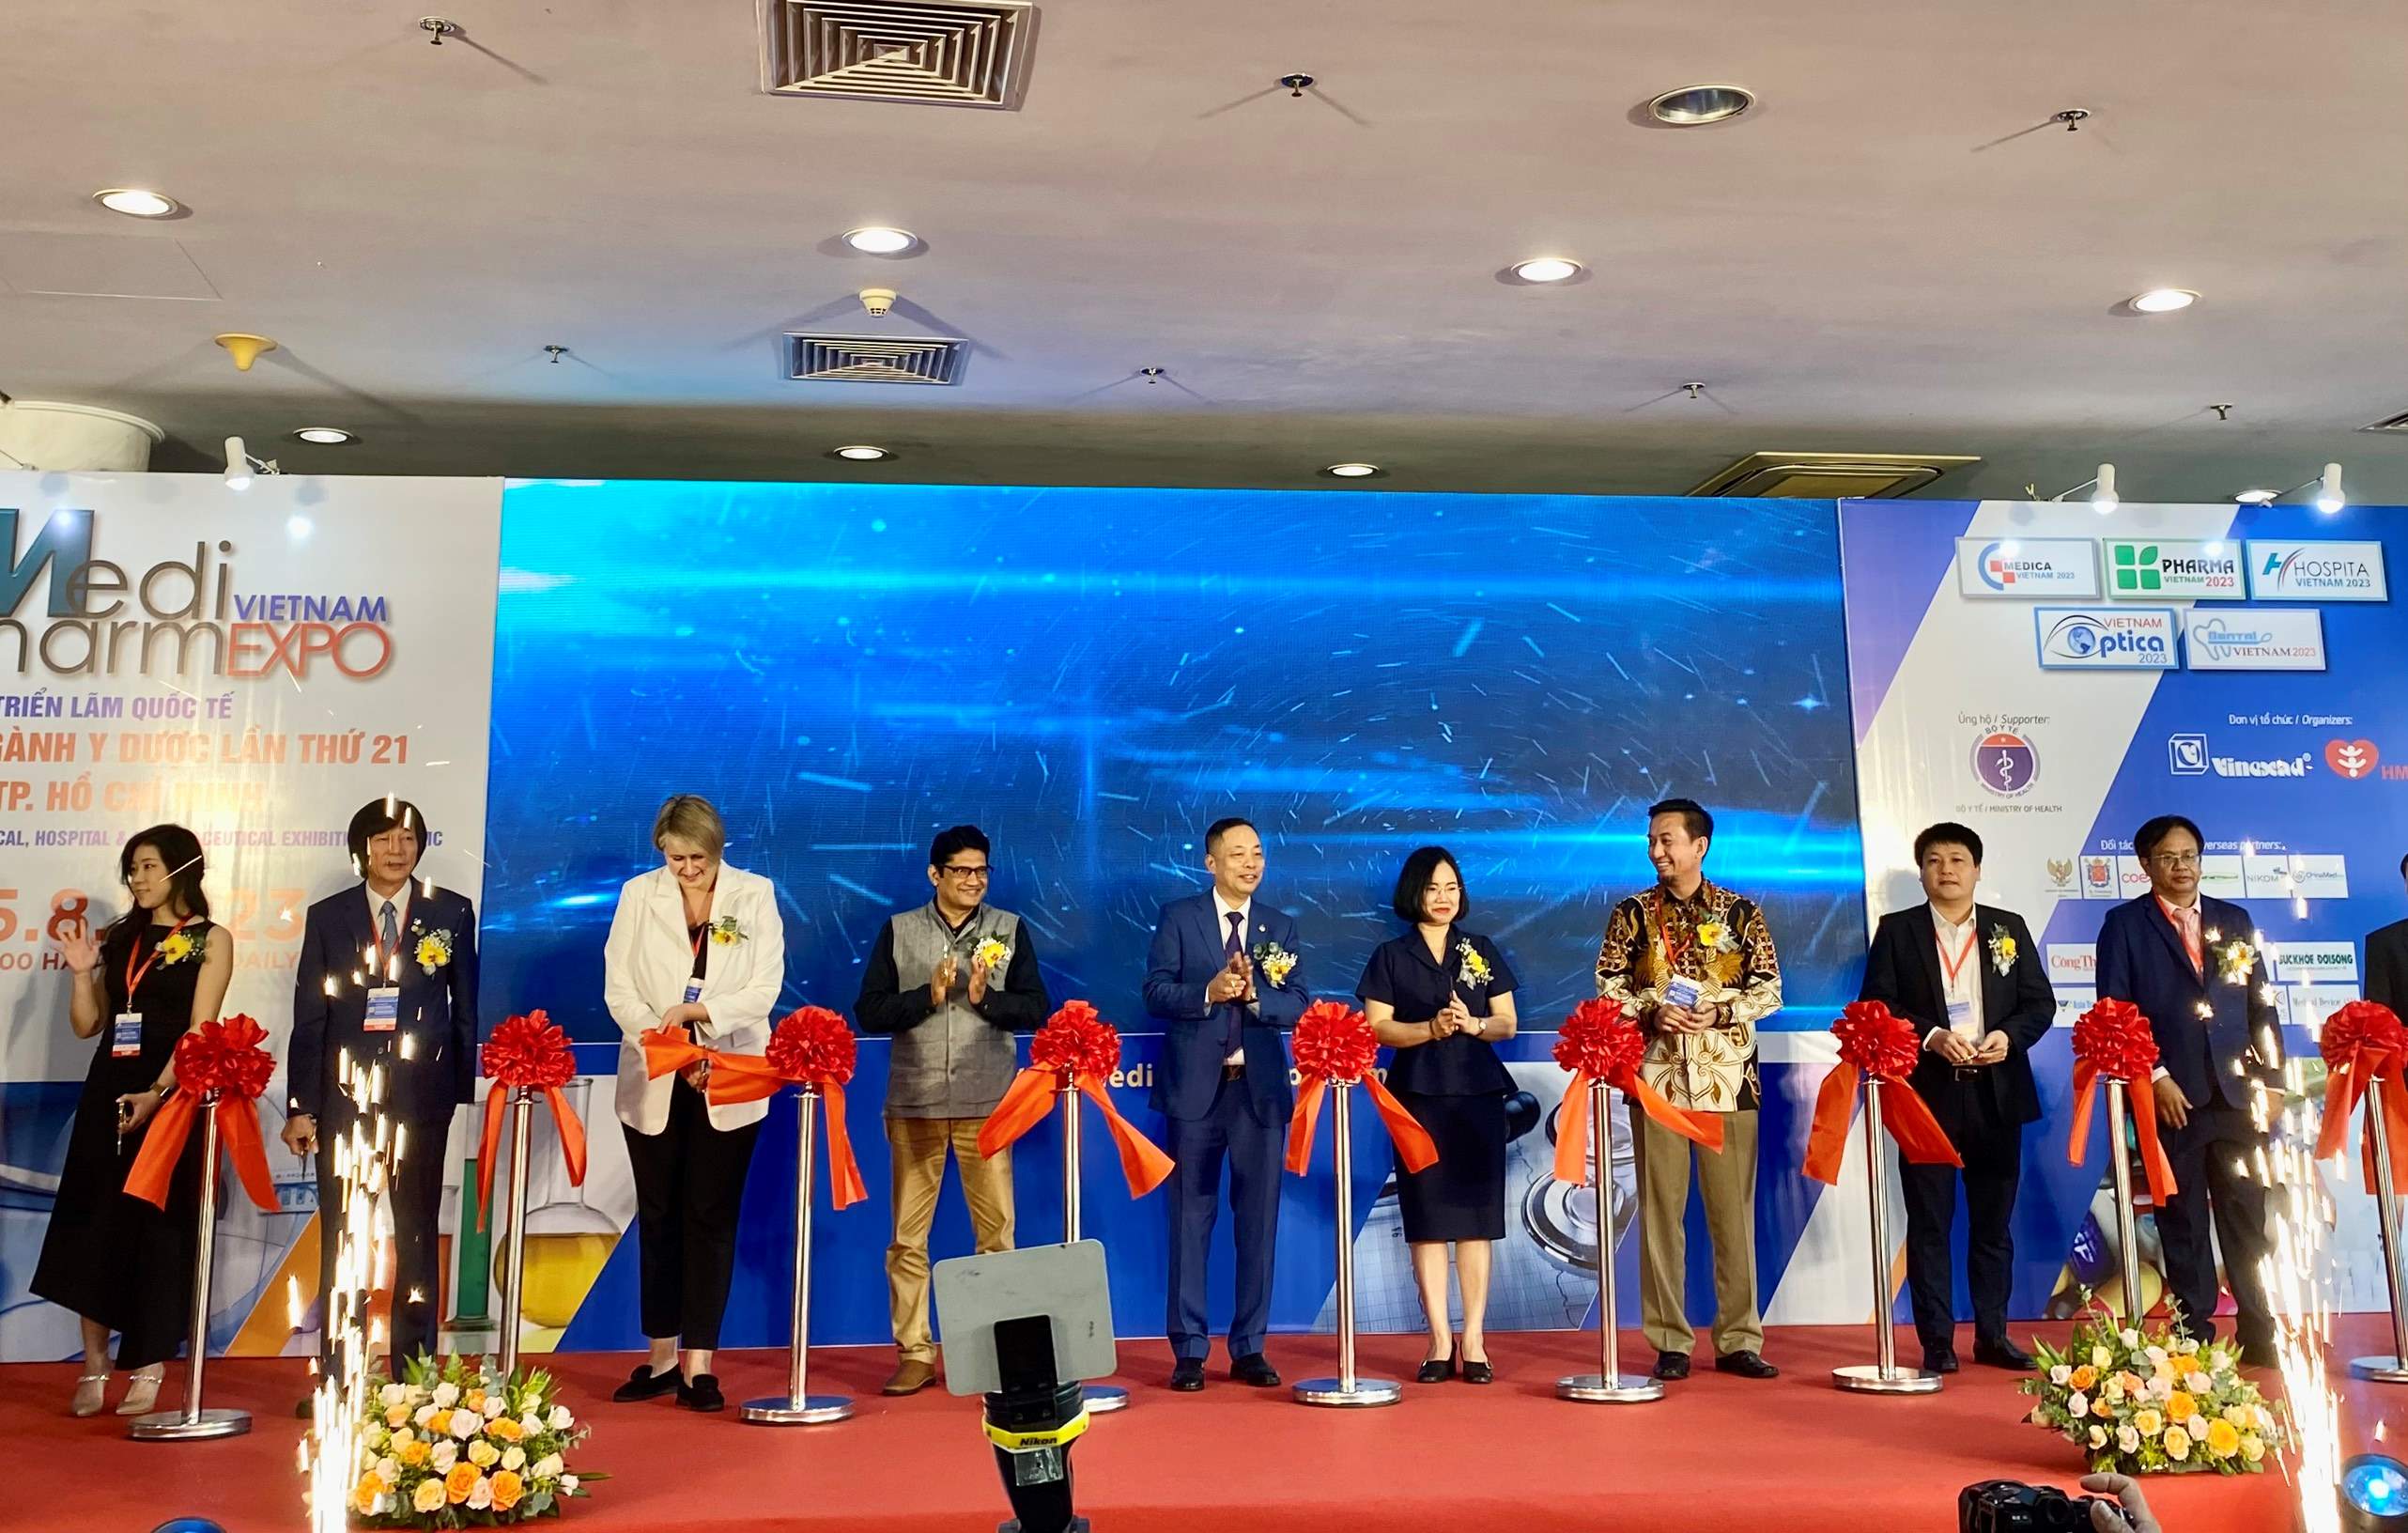 Lễ cắt băng khai mạc Triển lãm Quốc tế chuyên ngành Y dược lần thứ 21 (Vietnam Medipharm Expo 2023).